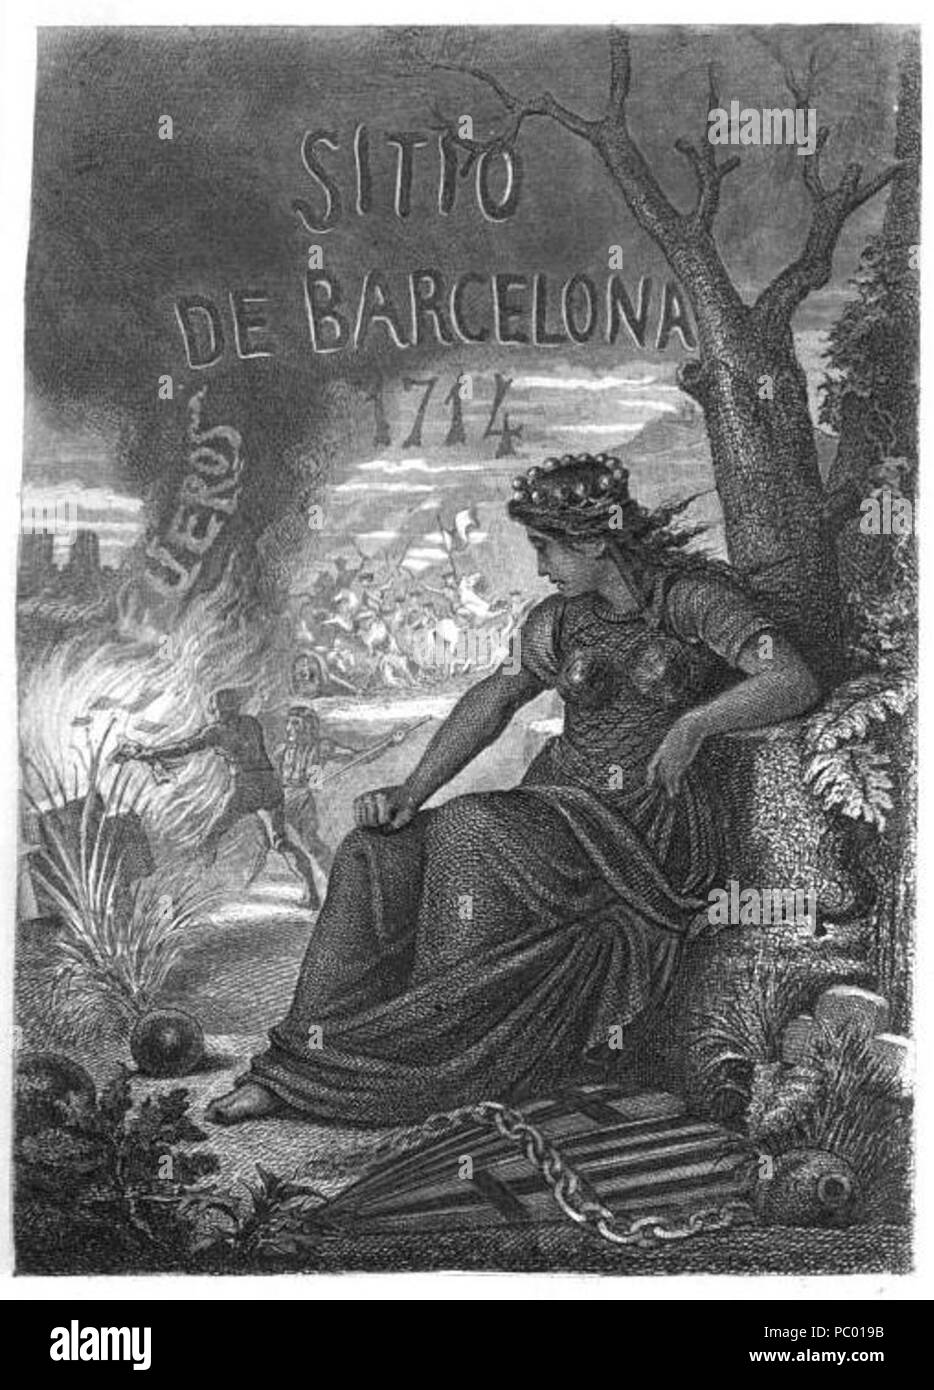 280 Historia - unvergesslich - Sitio - Barcelona-1714 - Mateo - bruguera Stockfoto